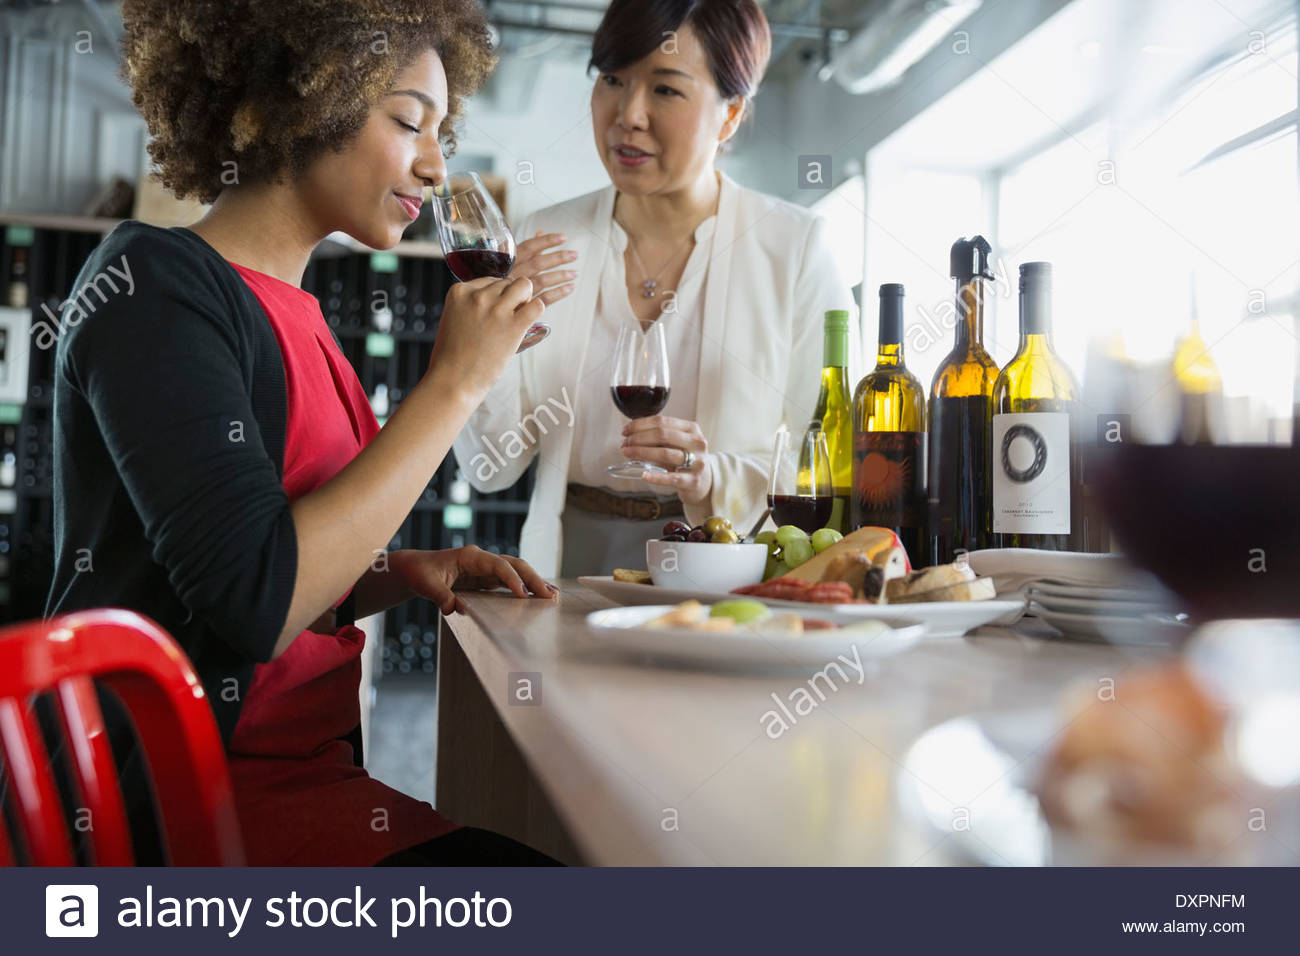 Women wine tasting in store Stock Photo